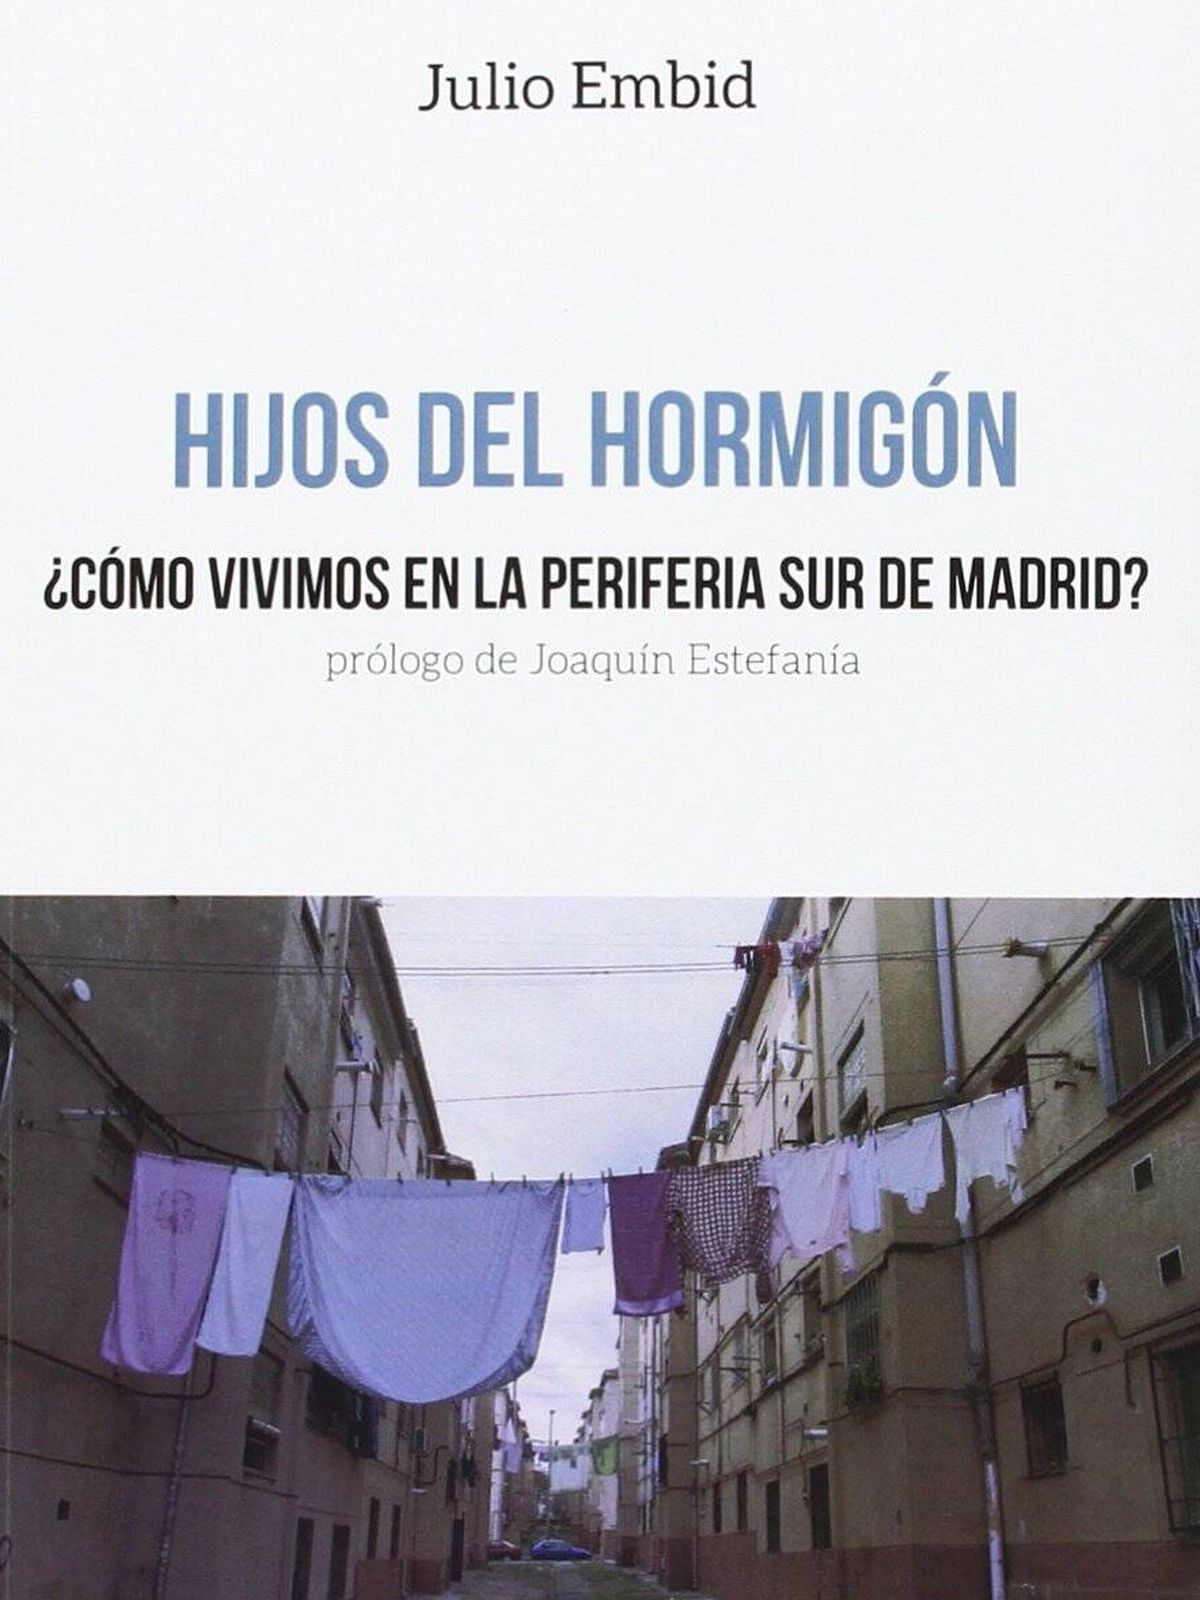 'Hijos del hormigón', de Julio Embid.